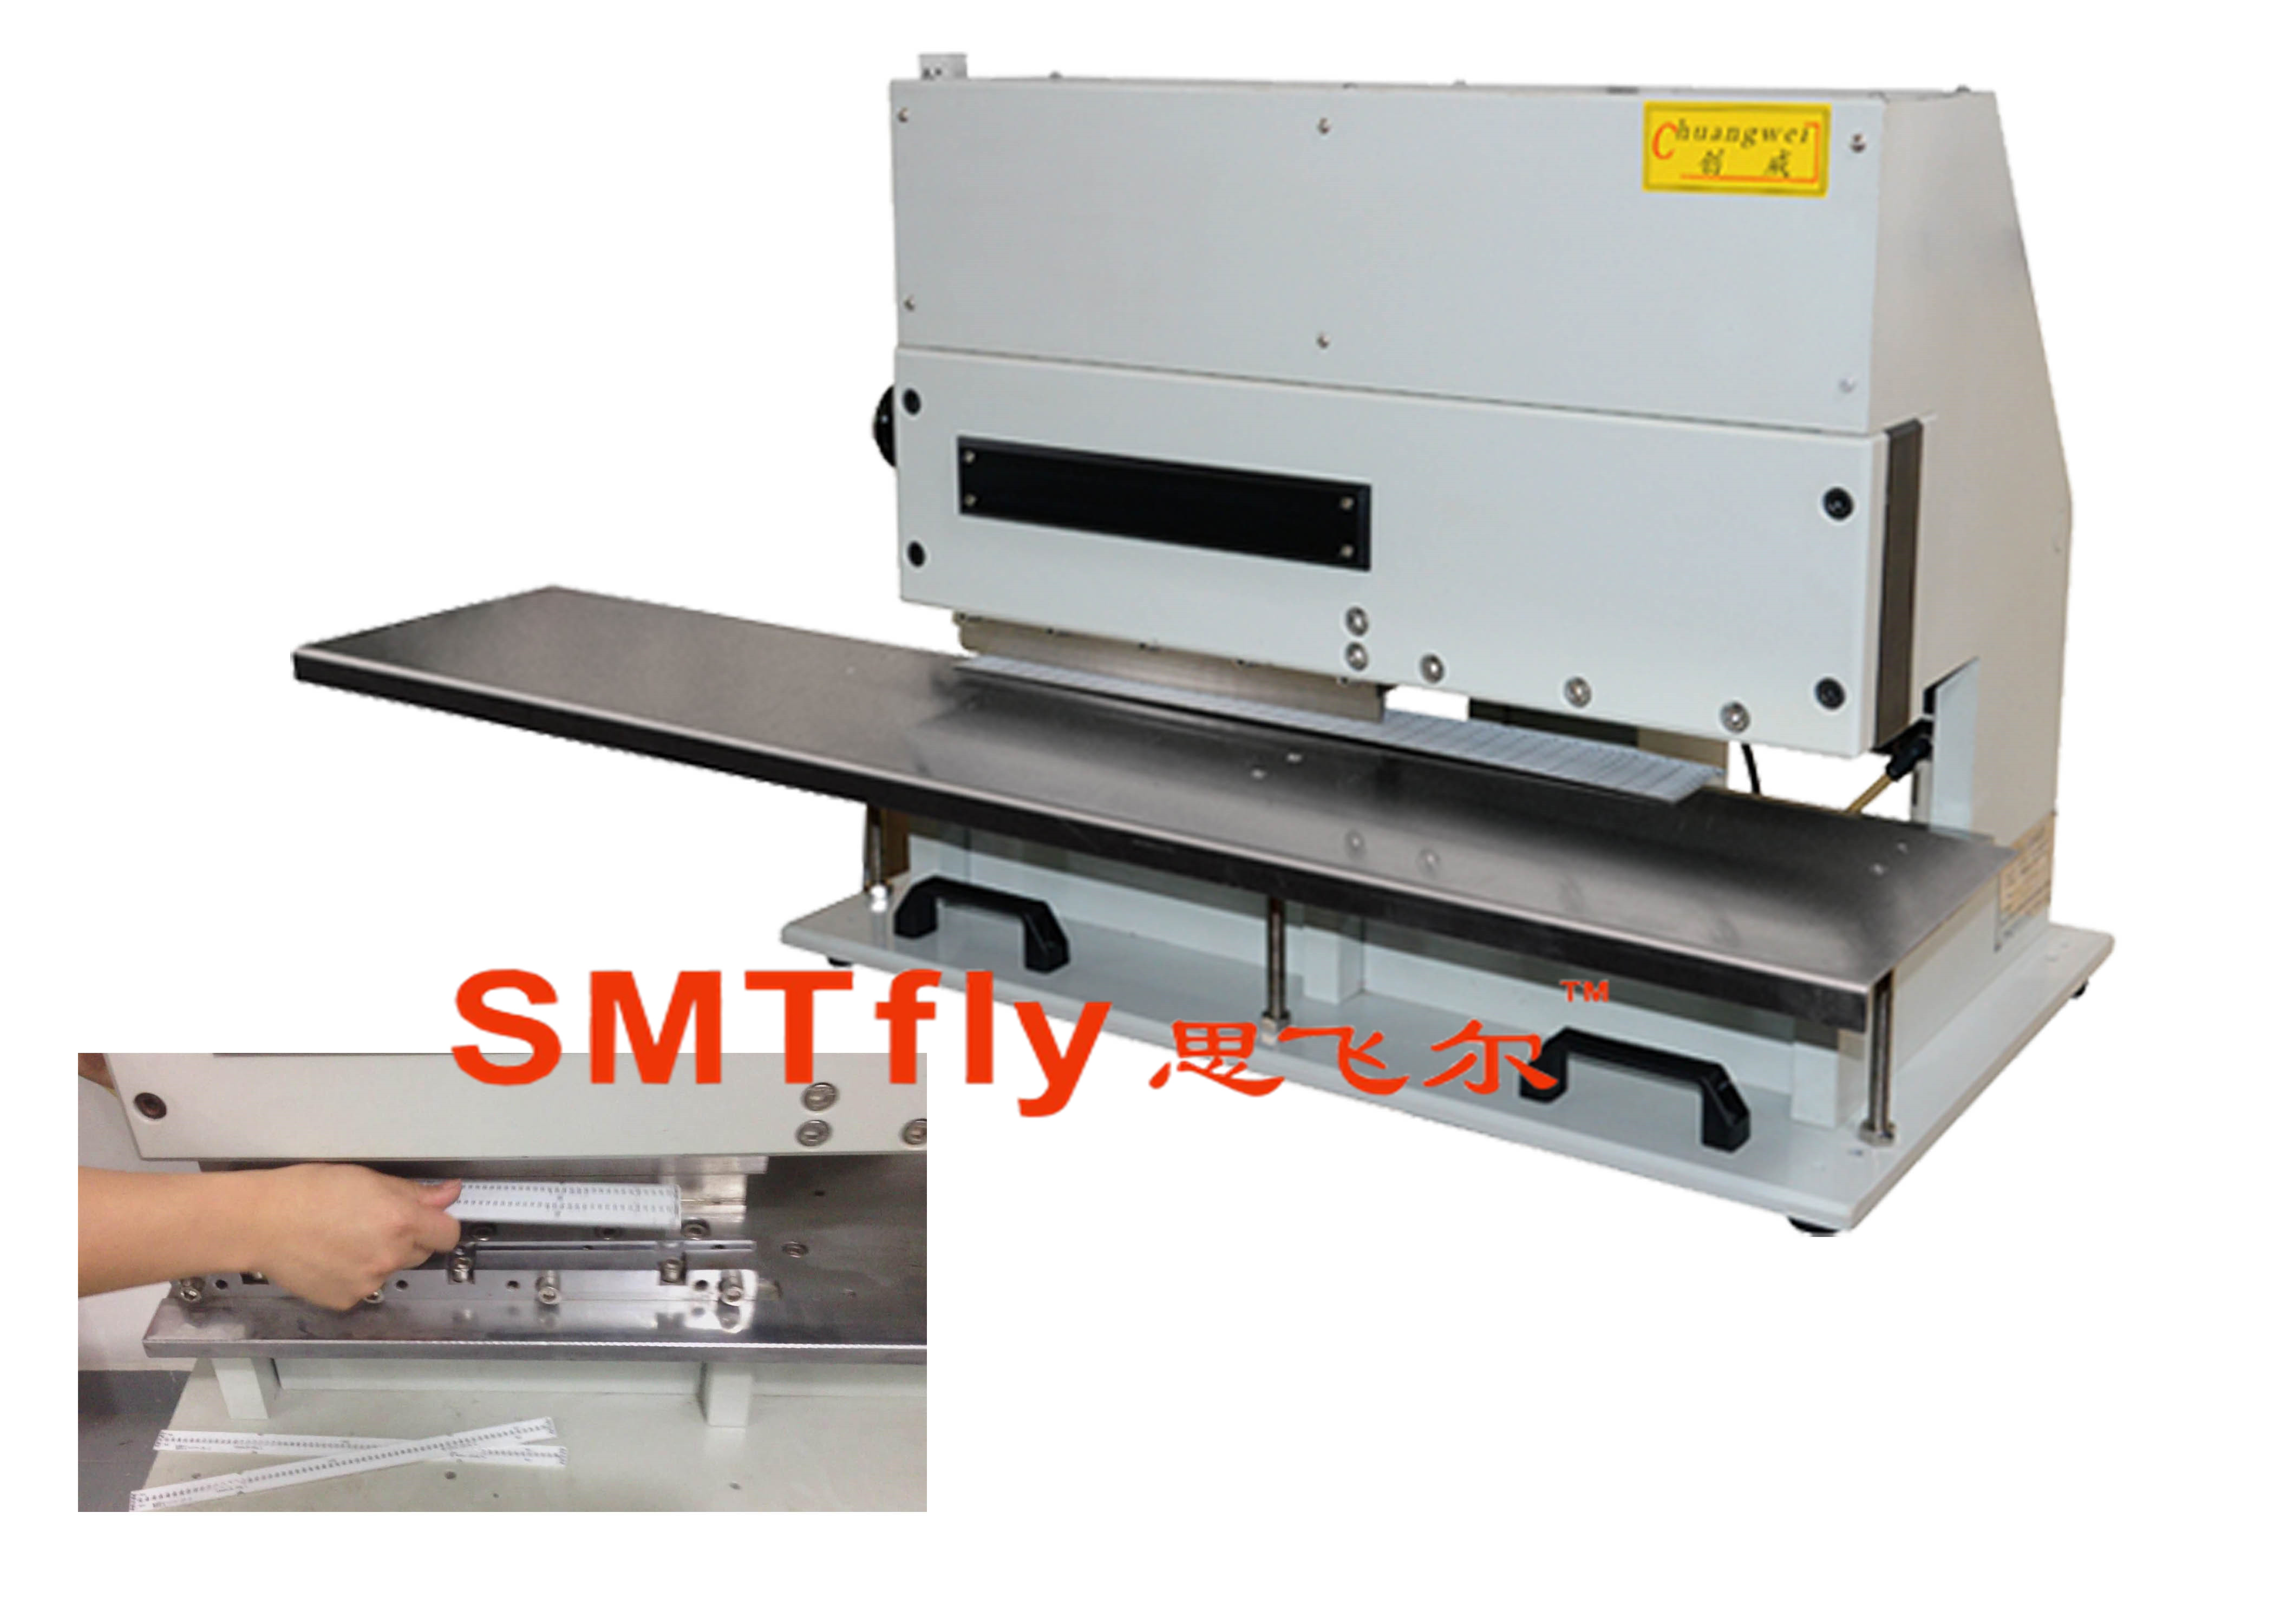 LED Tube Cutting Machine,SMTfly-3